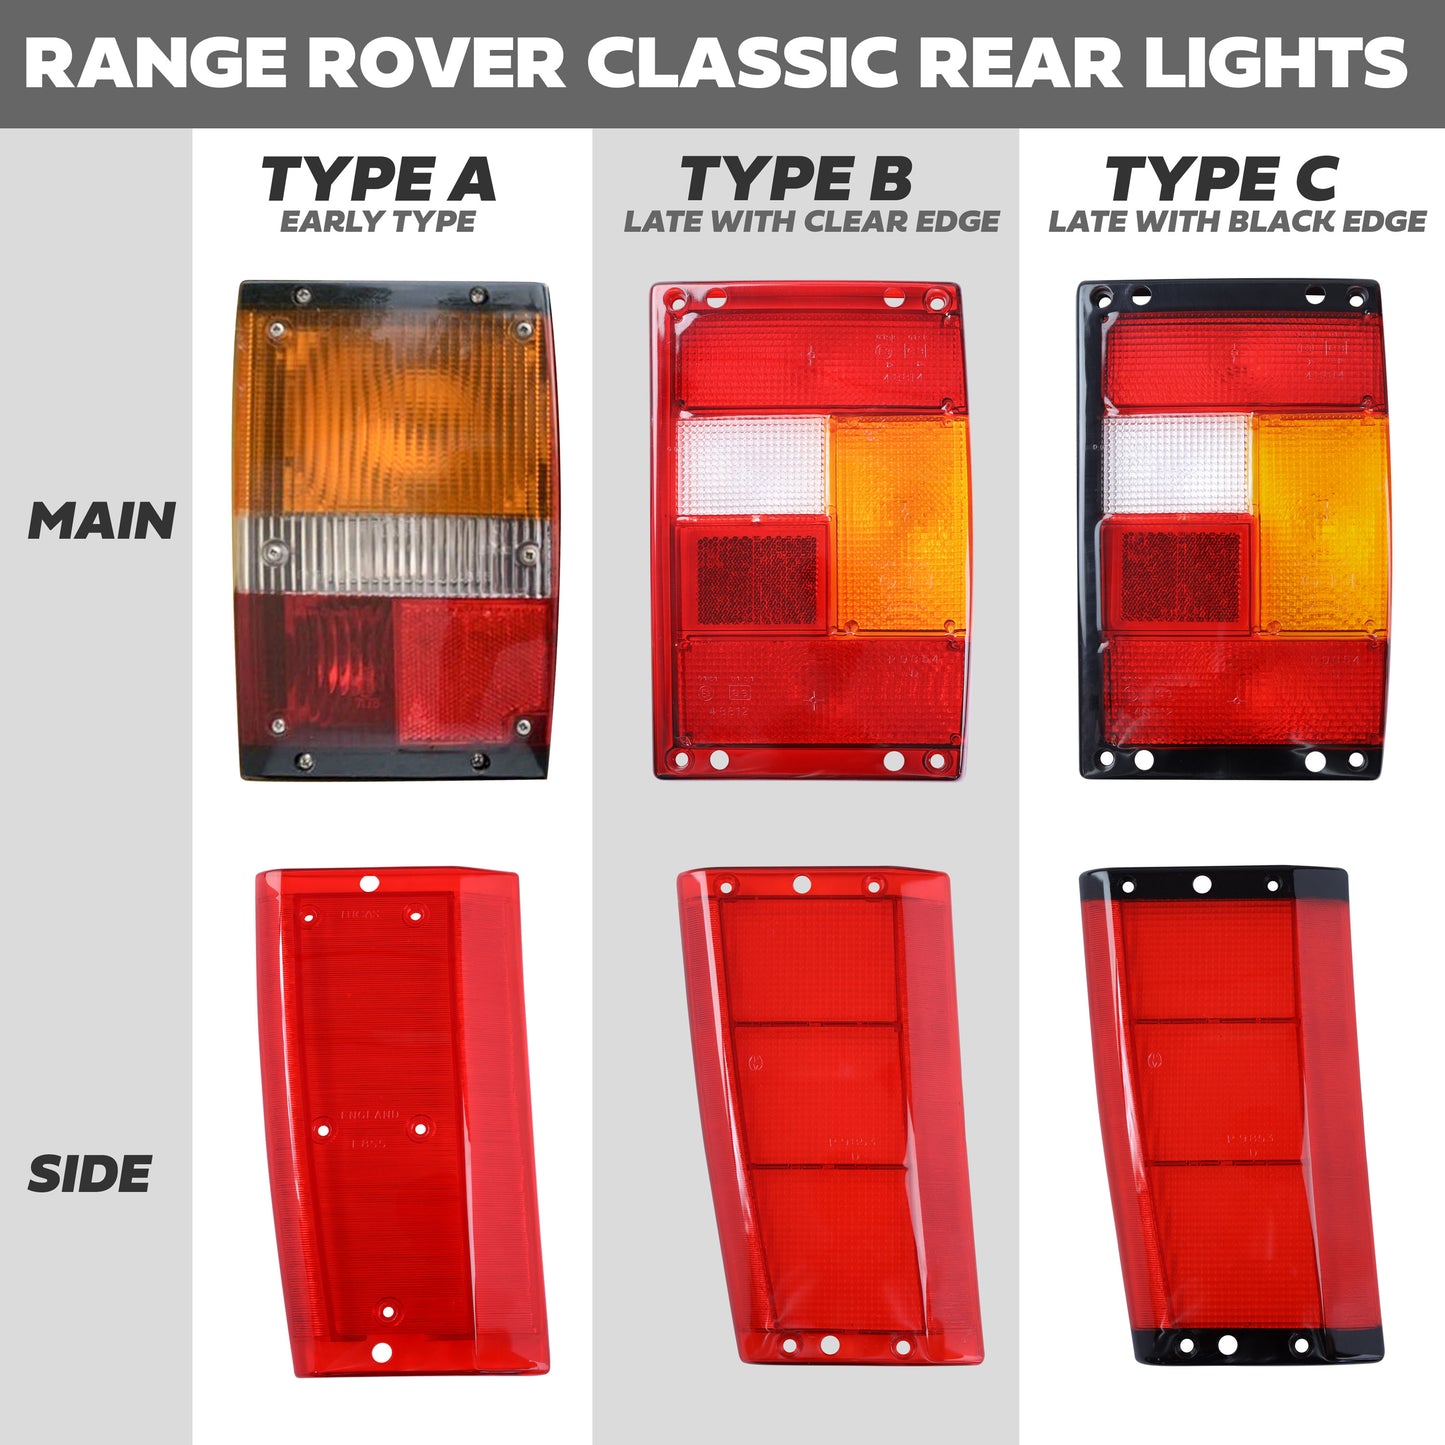 Rear Light Lens for Range Rover Classic - Main Lens - Black Edge - Right Side